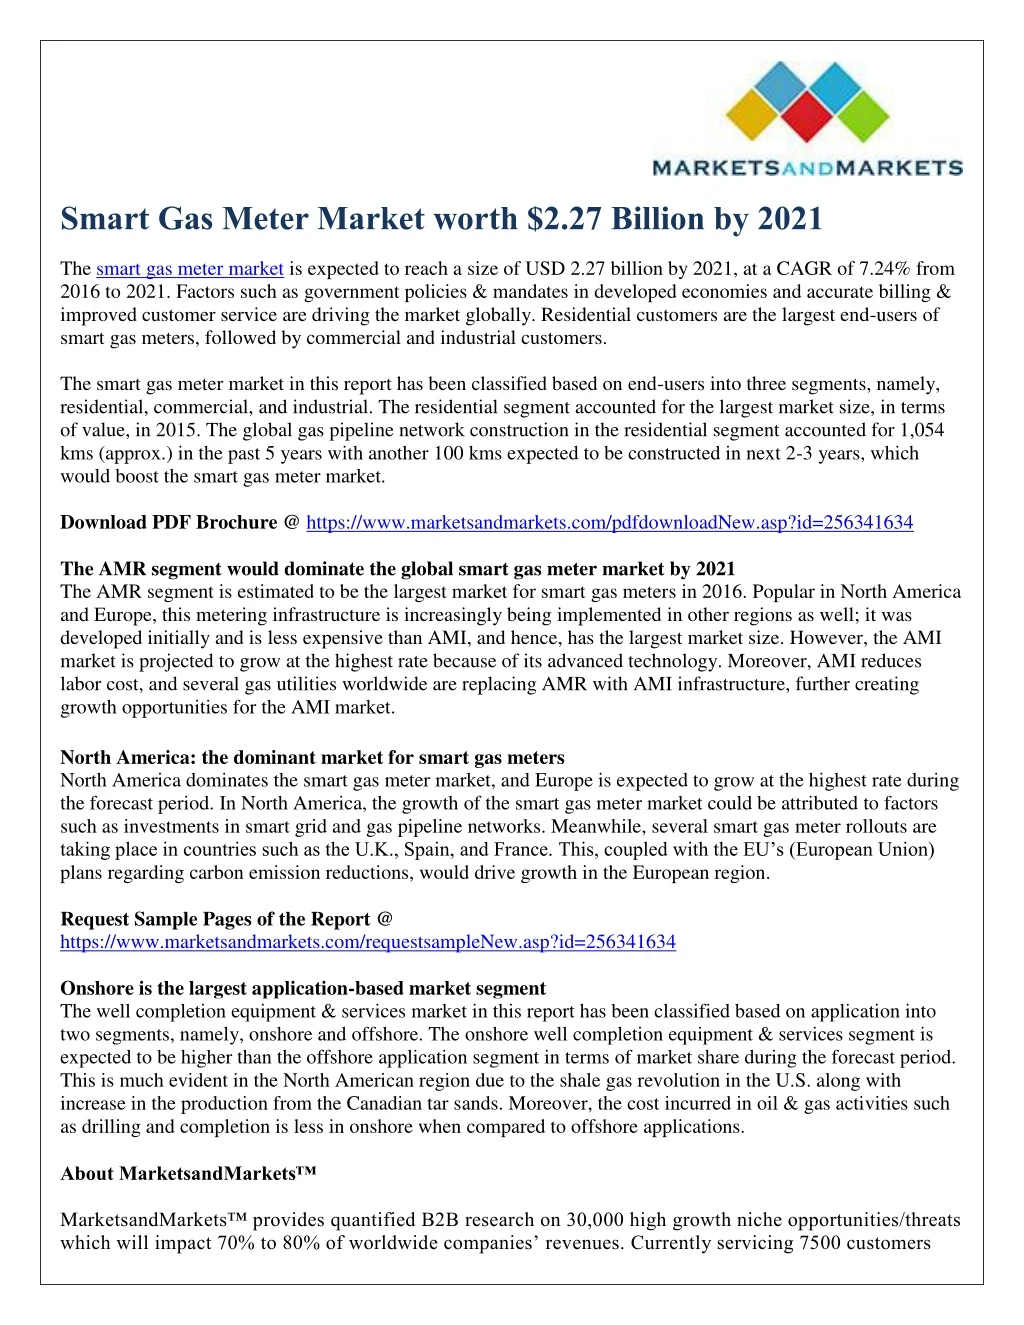 smart gas meter market worth 2 27 billion by 2021